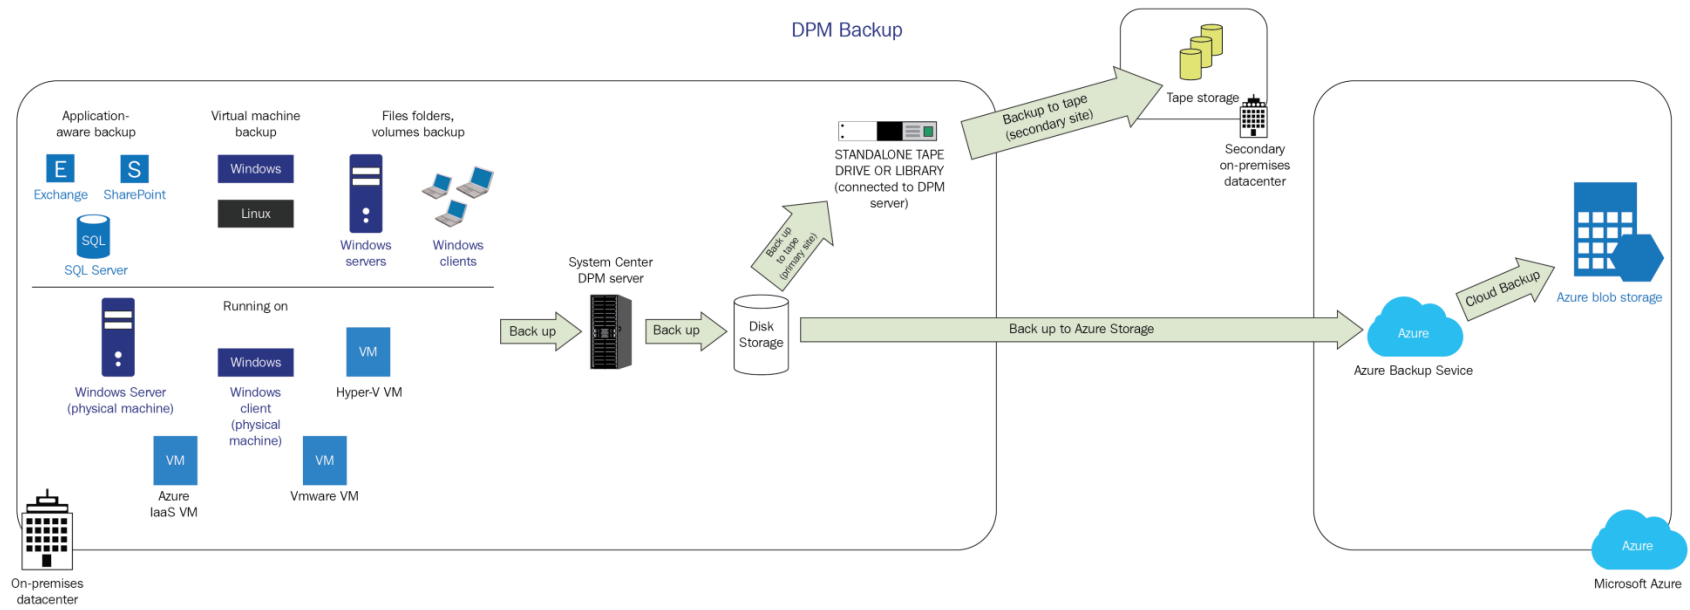 Diagramma del flusso di lavoro di backup di DPM.